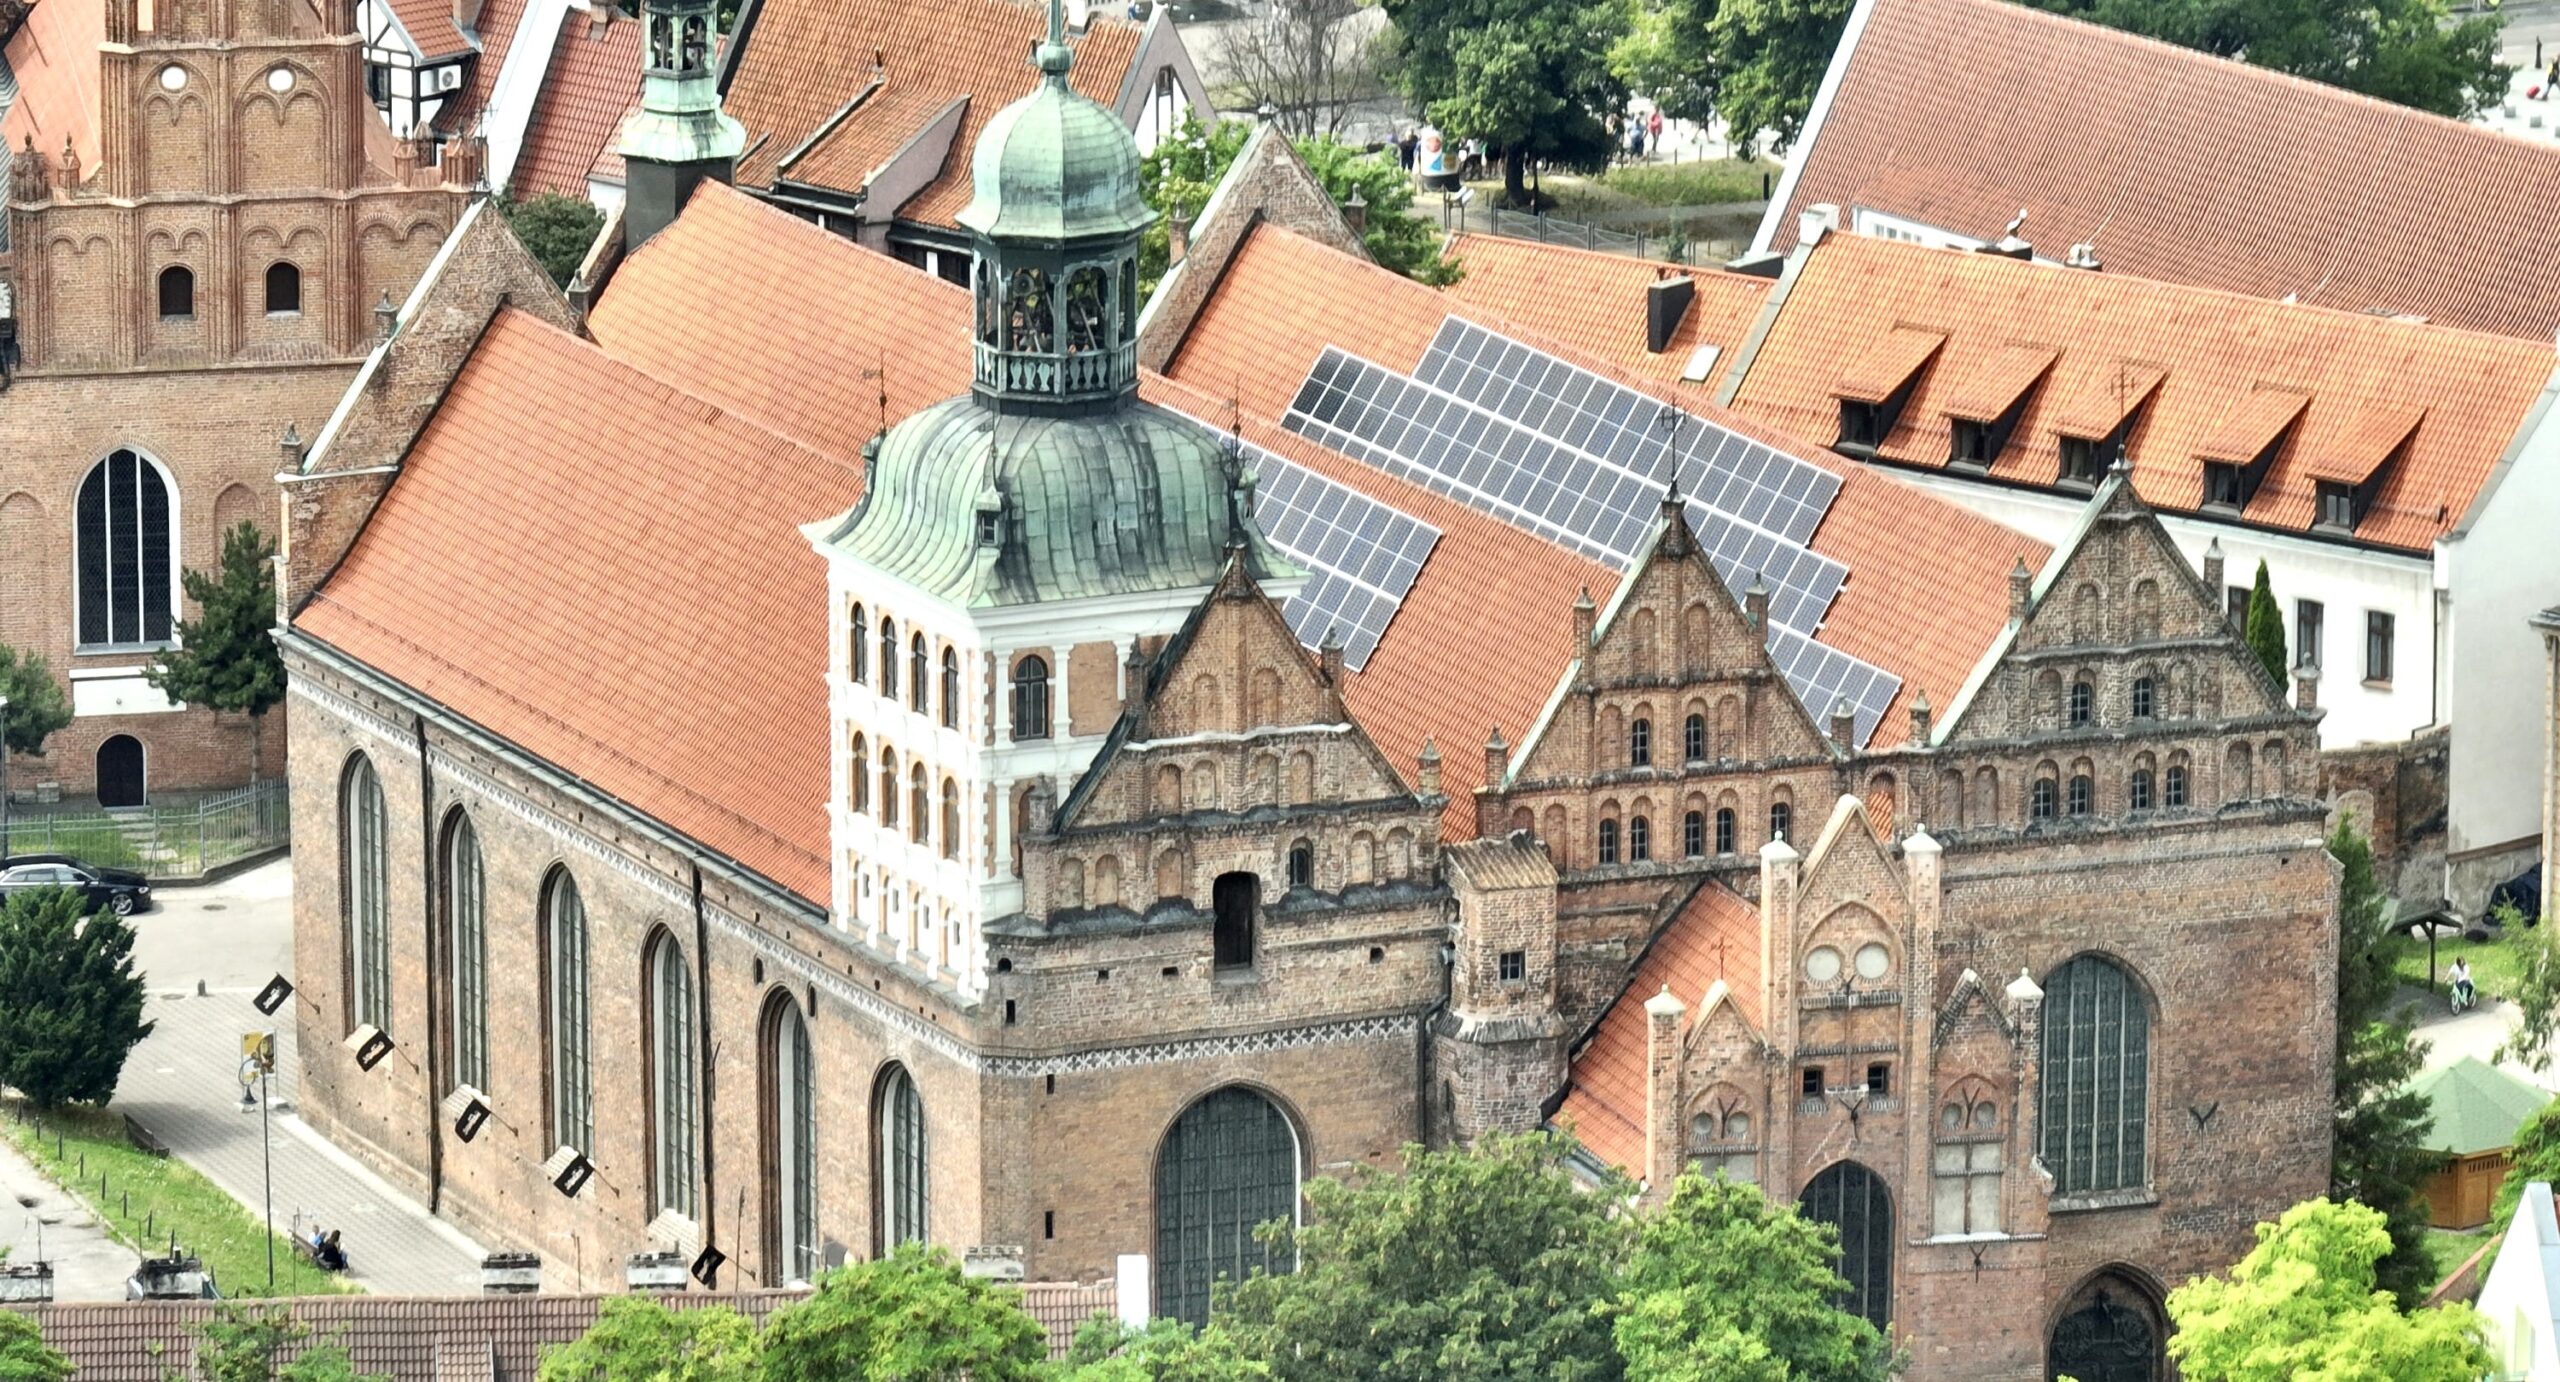 Ksiądz instaluje panele słoneczne w zabytkowym kościele w Polsce bez pozwolenia